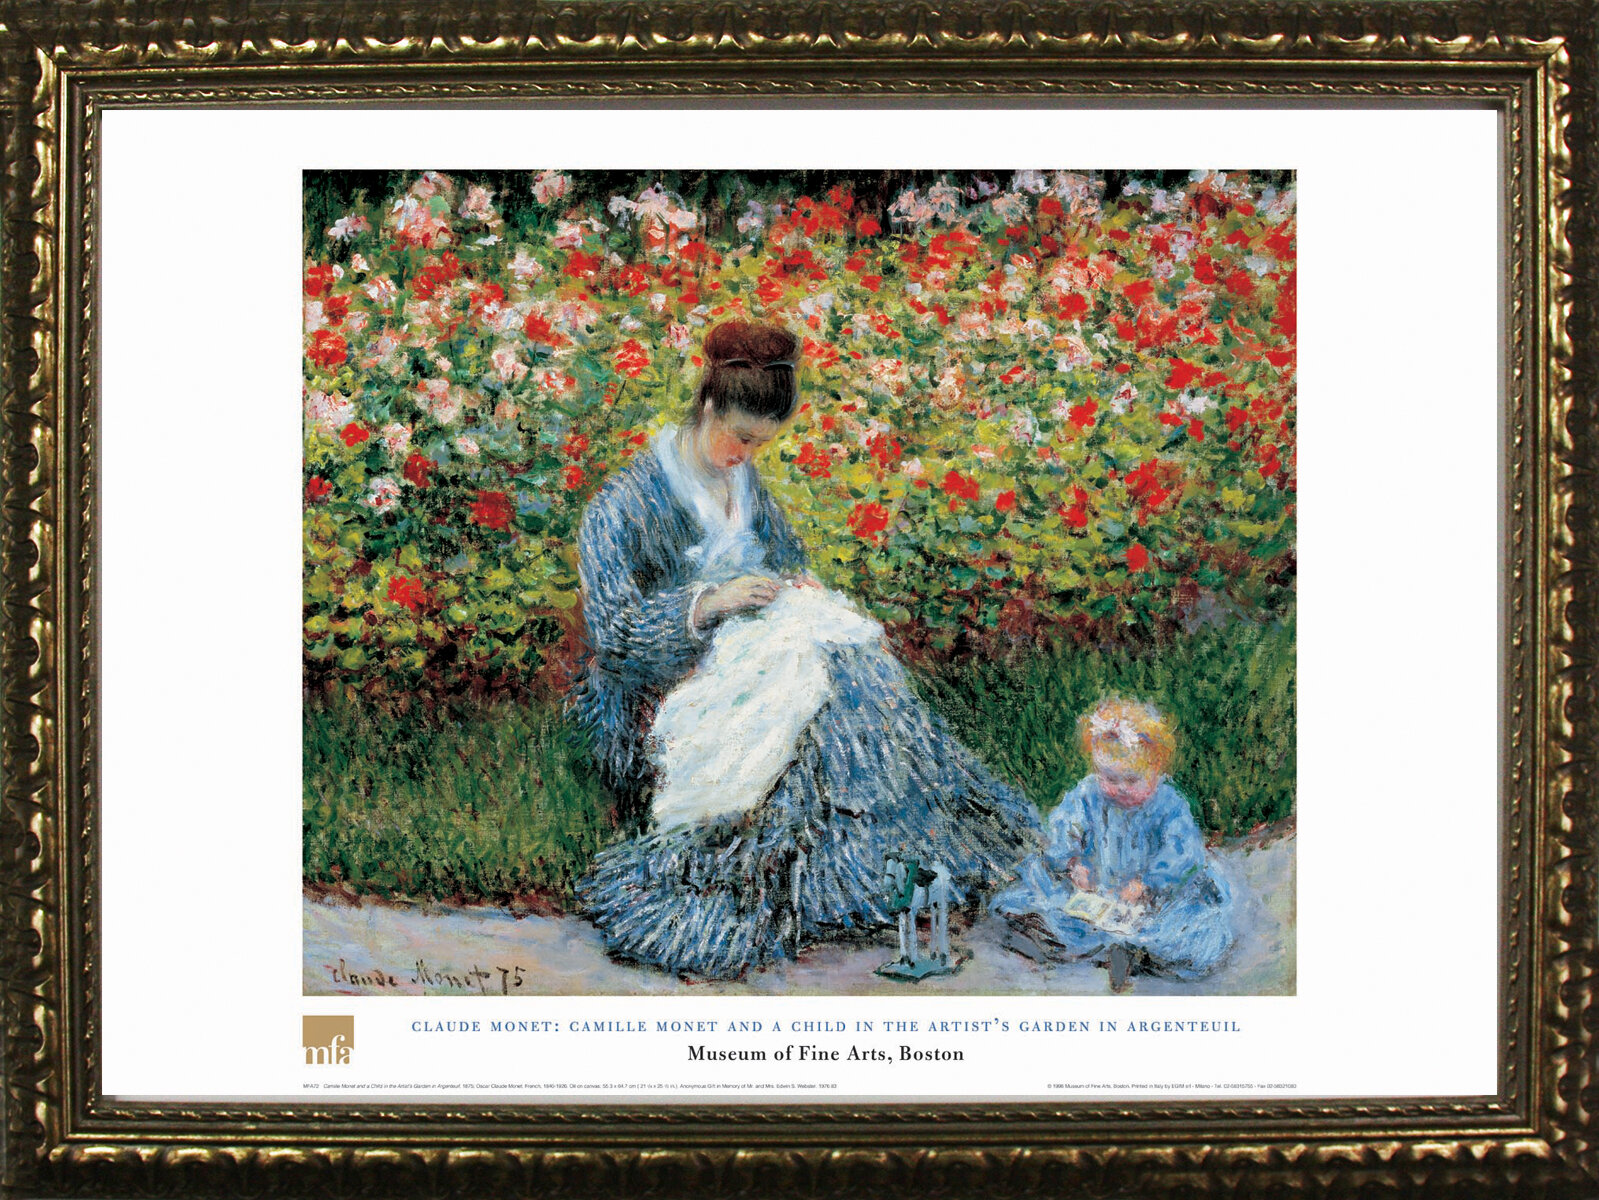 Claude Monet Garten Schön Garden by Claude Monet Graphic Art On Wrapped Canvas by Buy